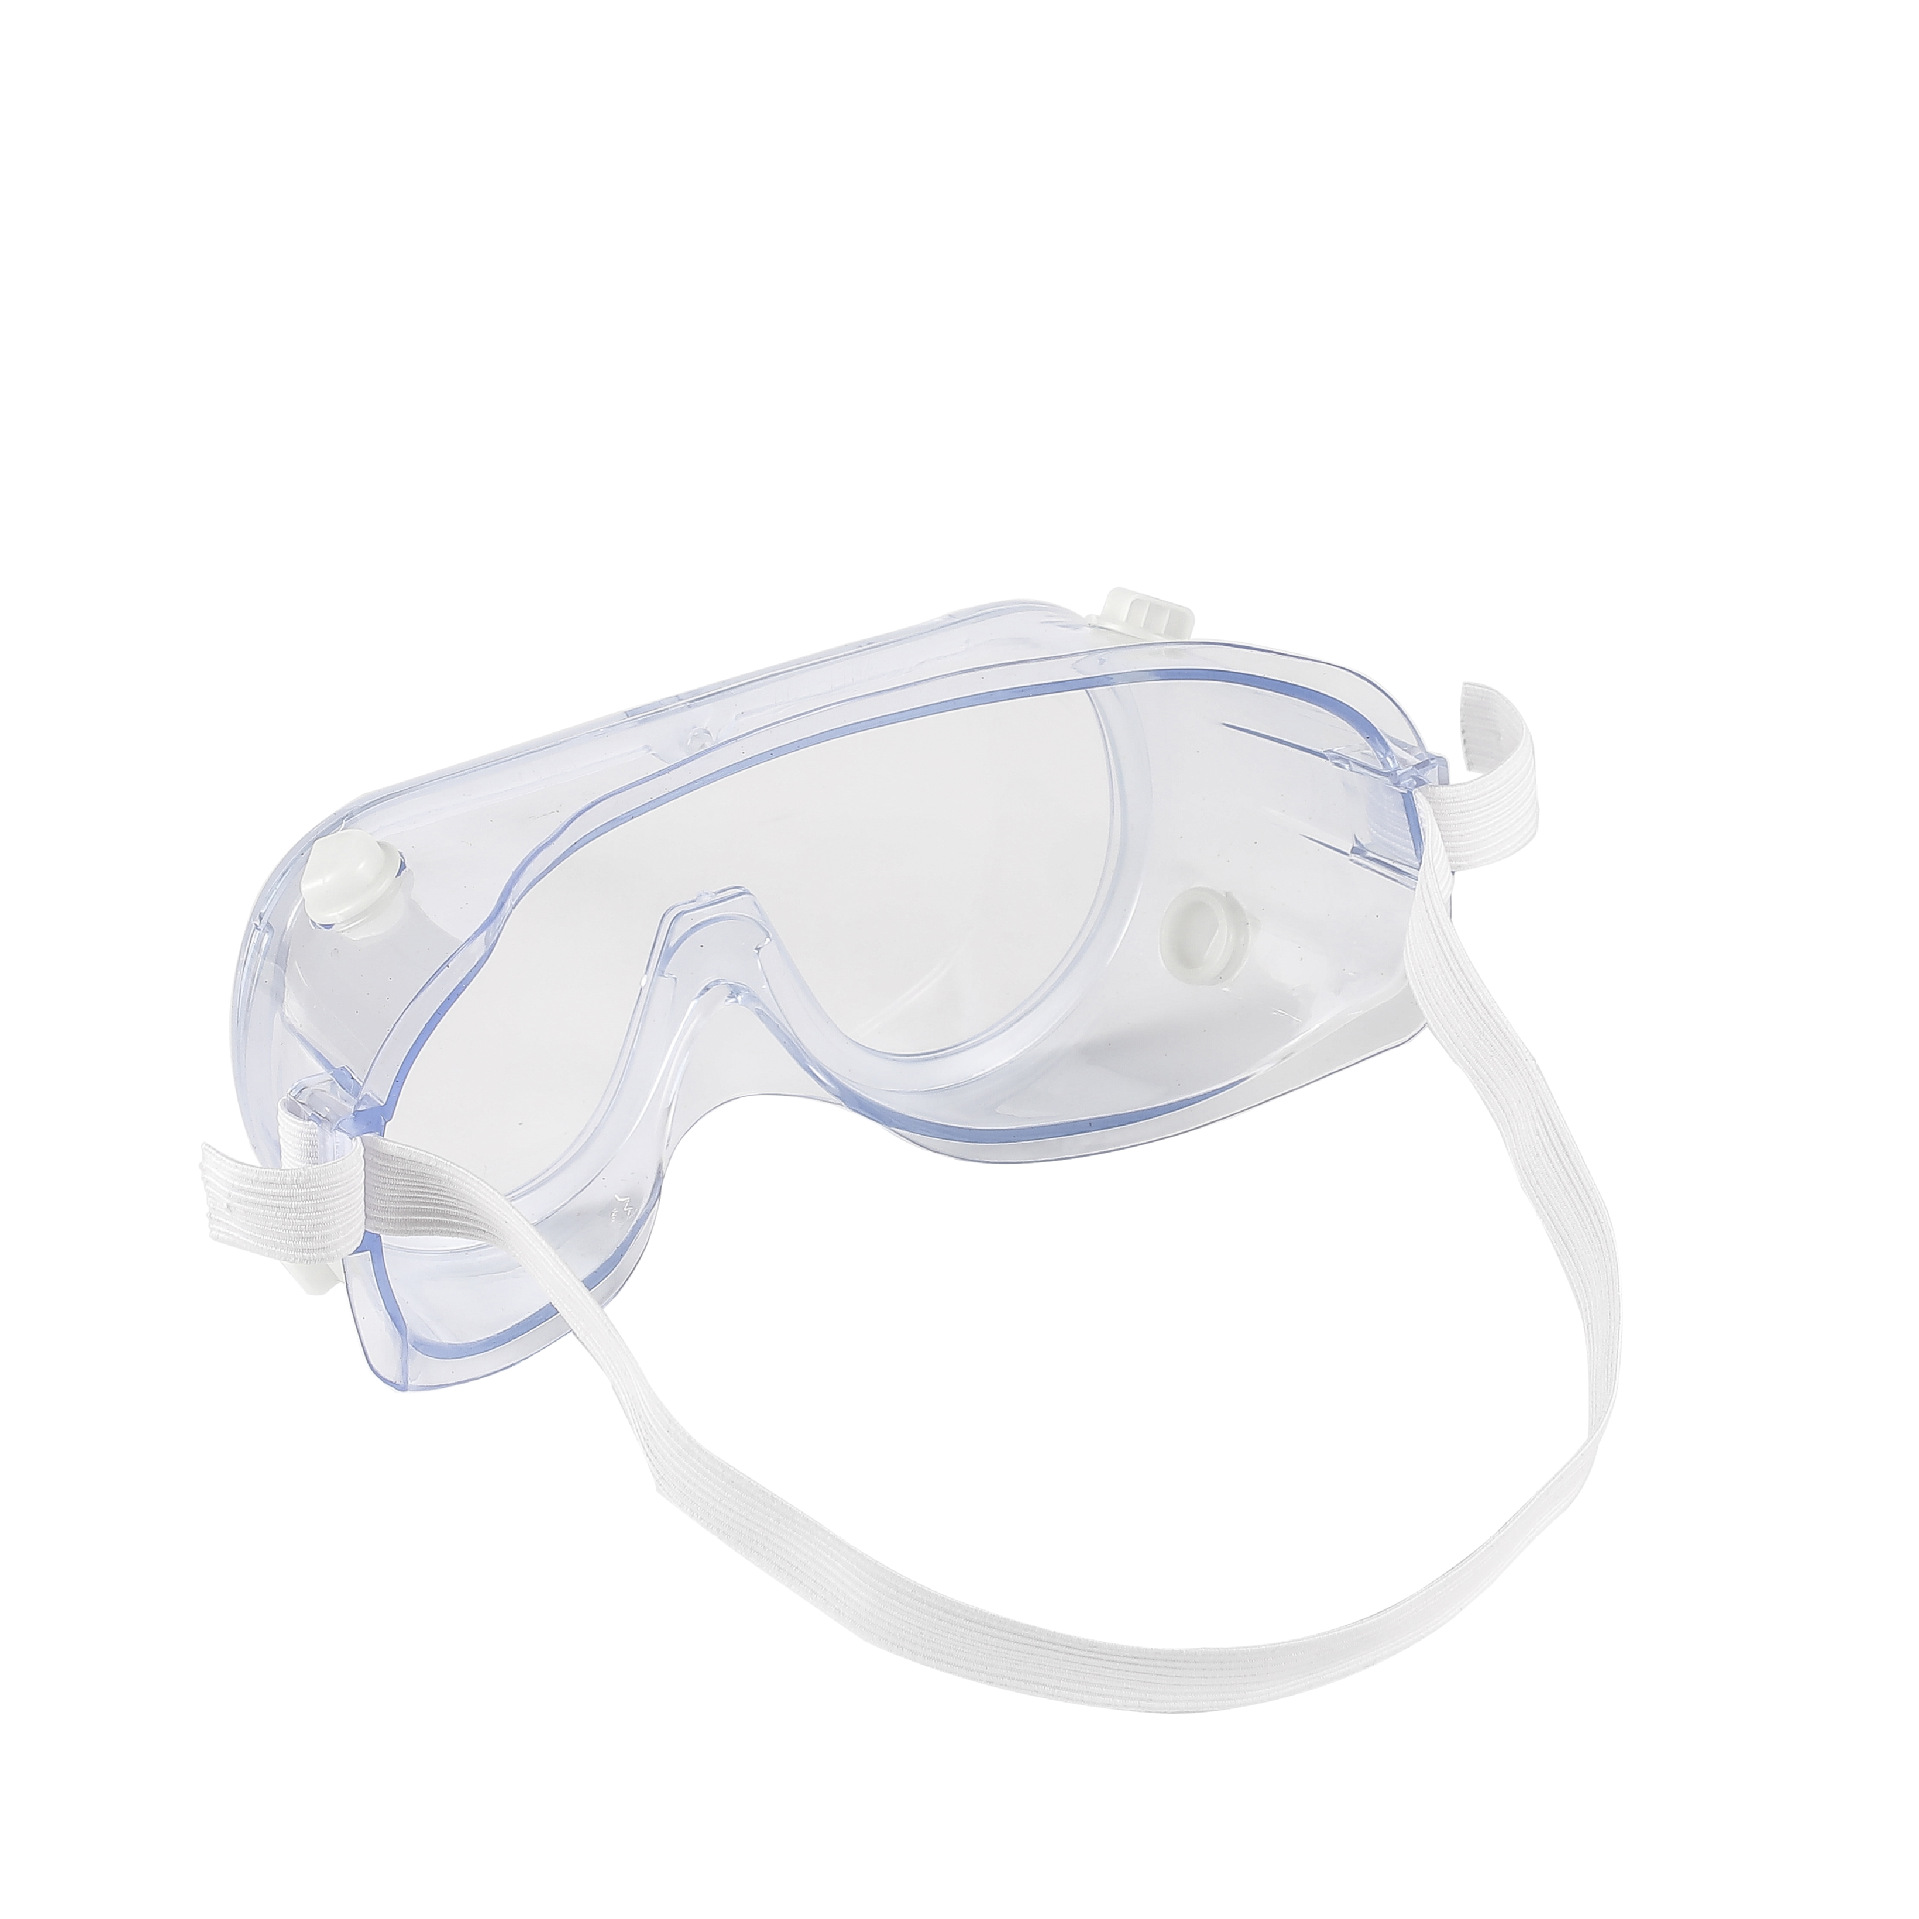 Nouvelles lunettes de sécurité anti-buée PC Lentilles Lunettes anti-choc anti-éclaboussures Lunettes d'équitation de travail Coupe-vent Lunettes de protection anti-UV